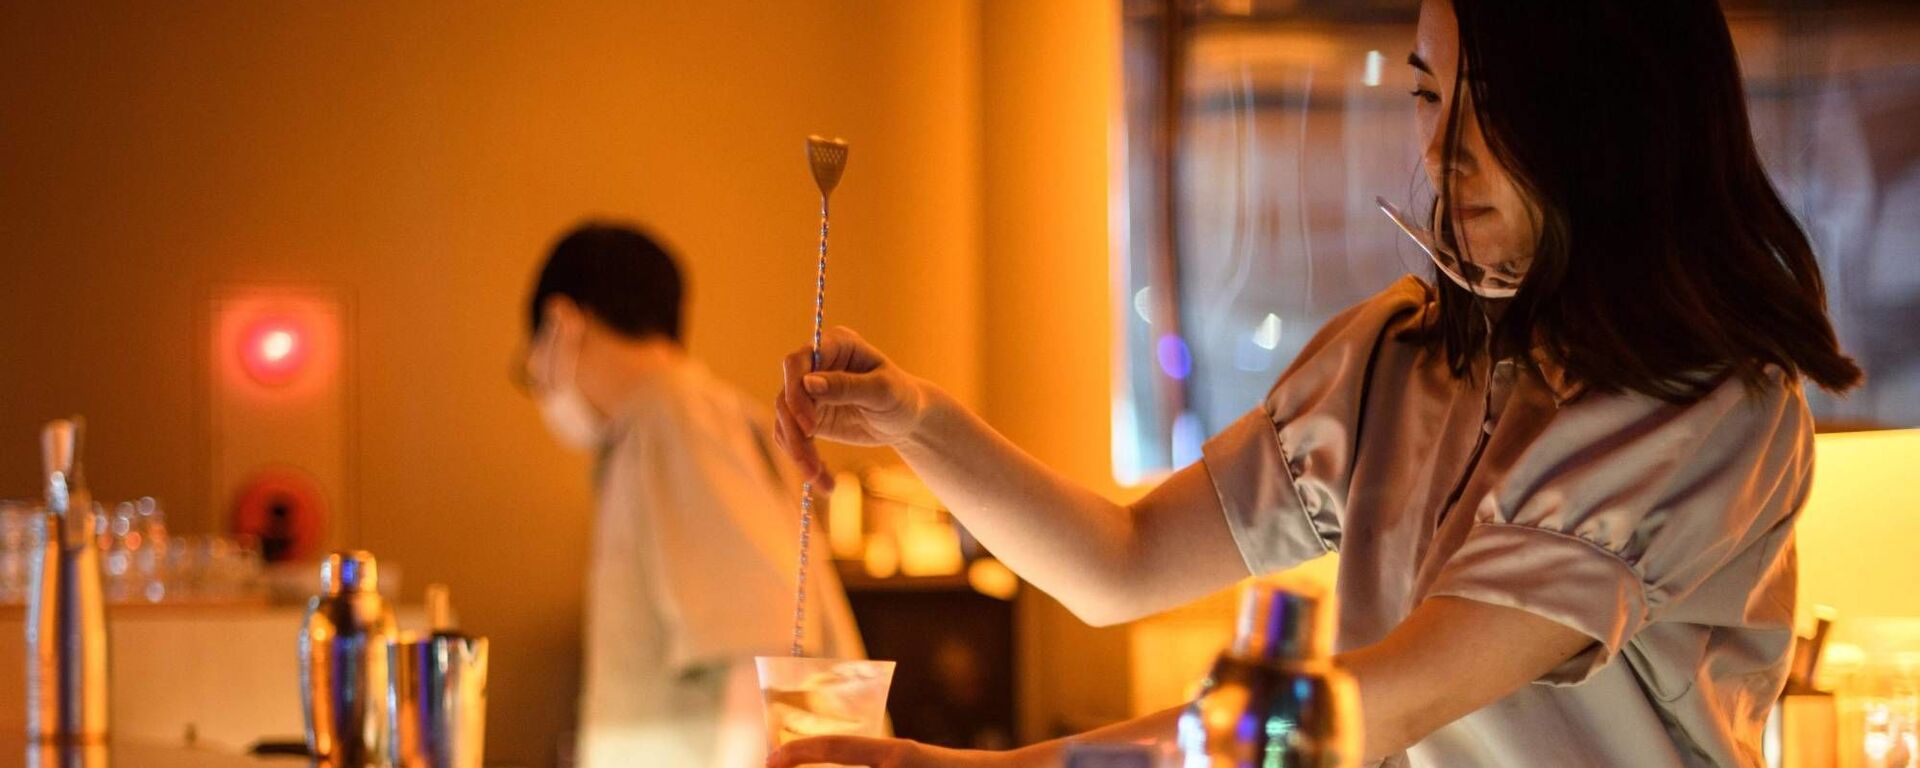 Son derece sofistike tat çeşitlemeleri sunan alkolsüz kokteyllerin servis edildiği barlar Japonya'da giderek yaygınlaşıyor. - Sputnik Türkiye, 1920, 07.07.2022